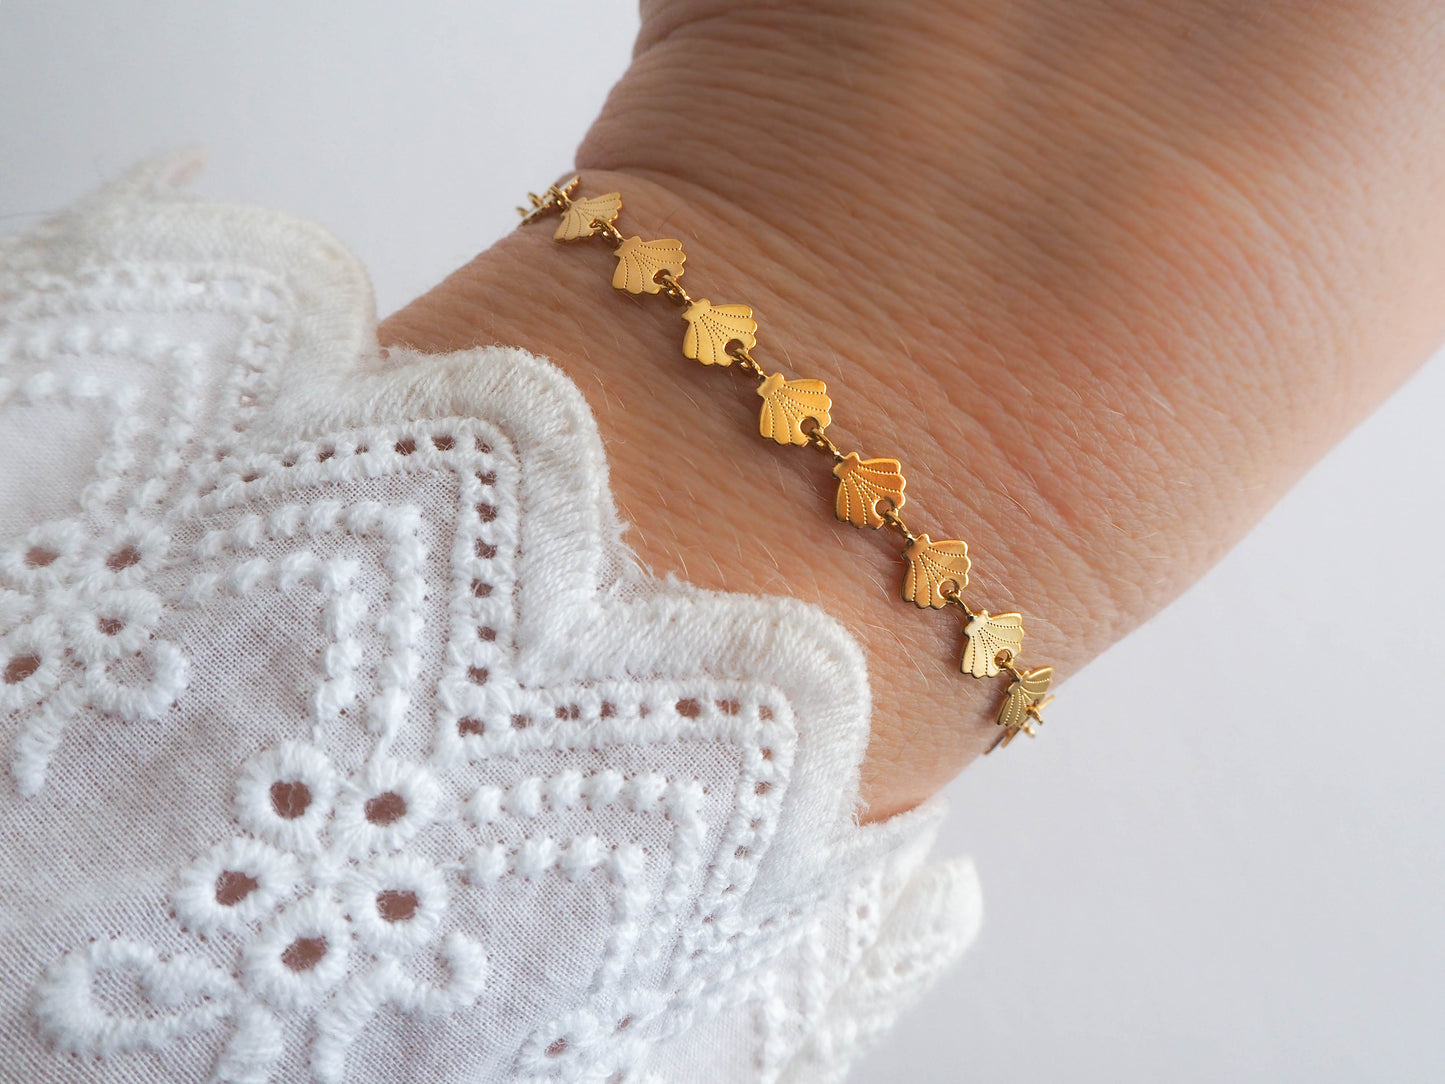 Golden seashell bracelet on model